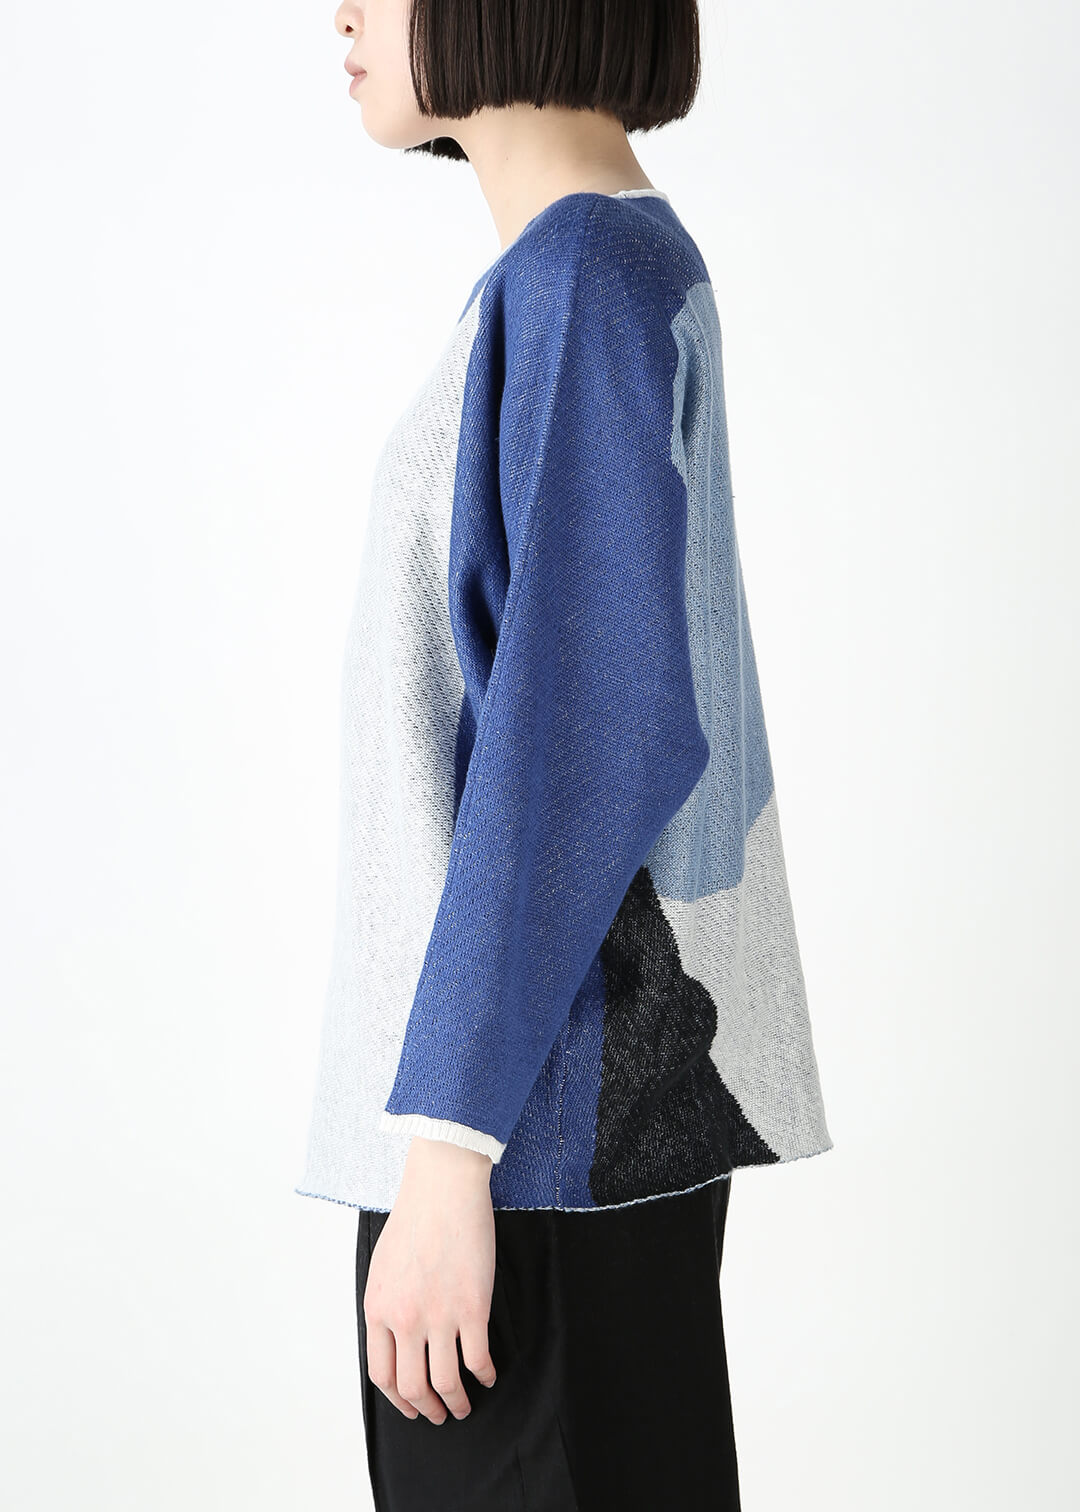 Kirie Jacquard Sweater 12gg Linen